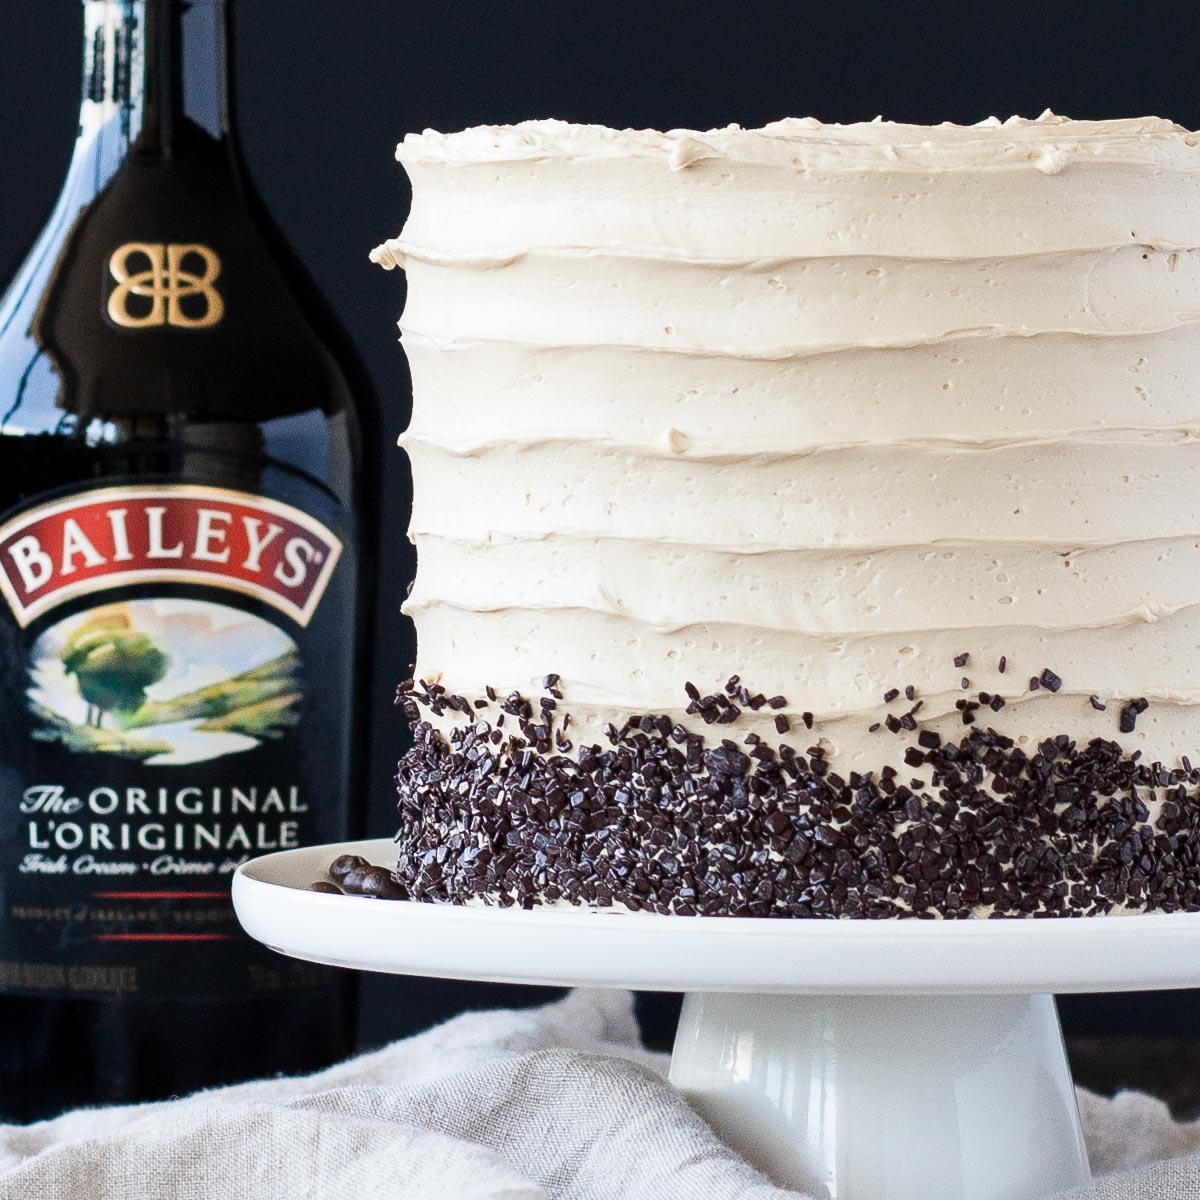 Coffee & Baileys Cake